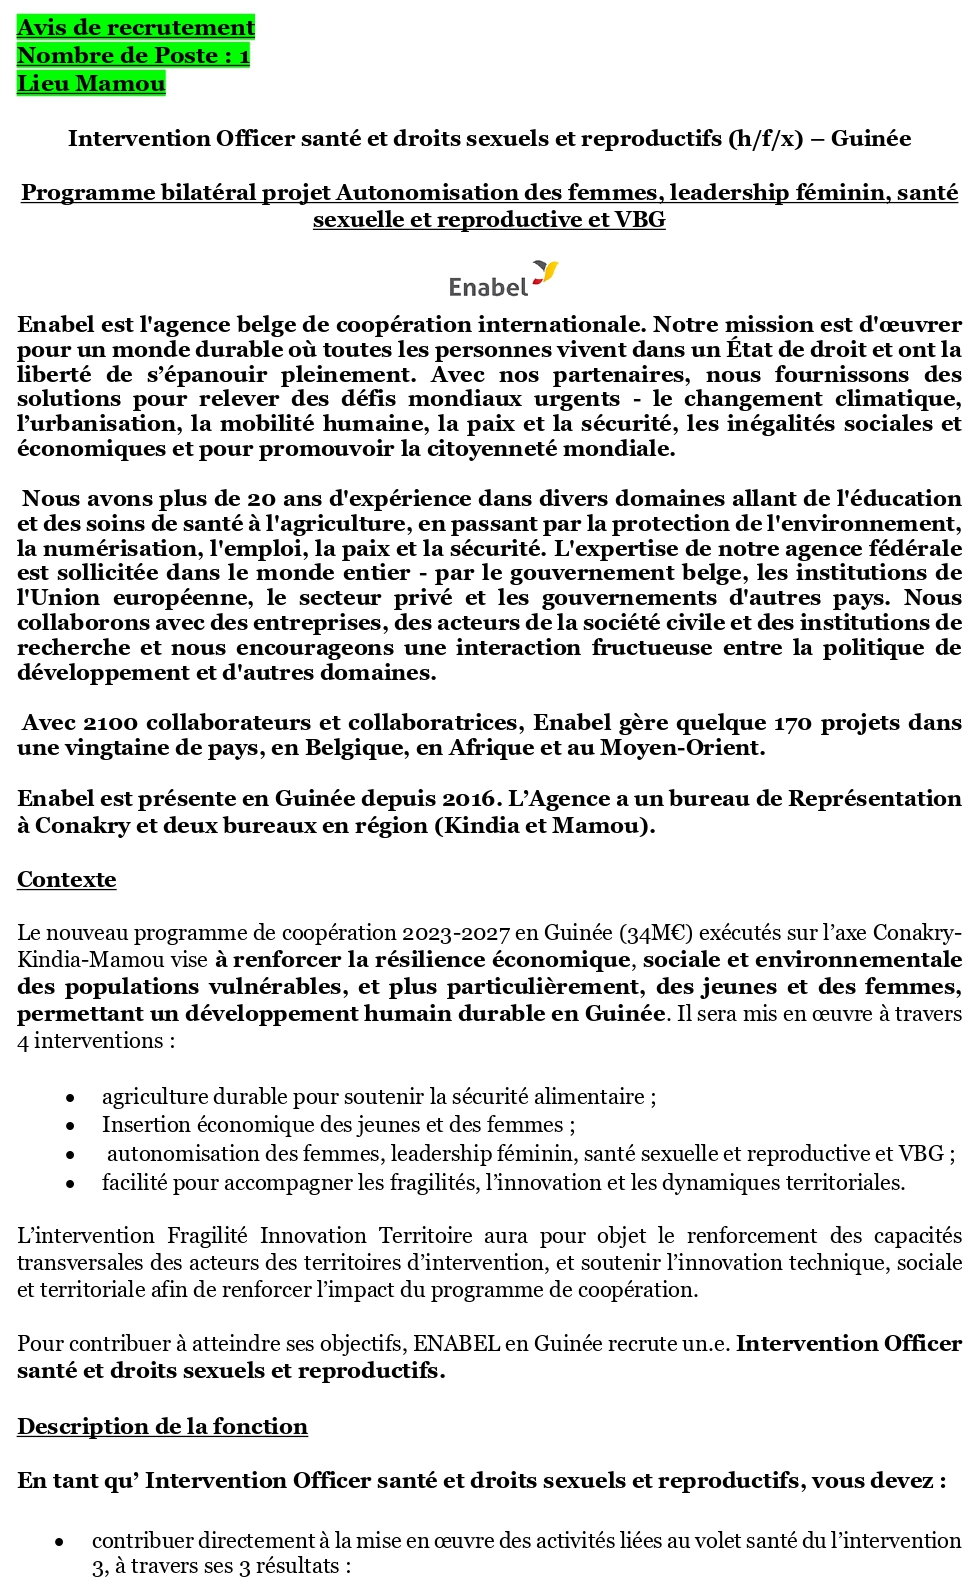 Avis de recrutement d'un Intervention Officer santé et droits sexuels et reproductifs (h/f/x) – Guinée | Page 1